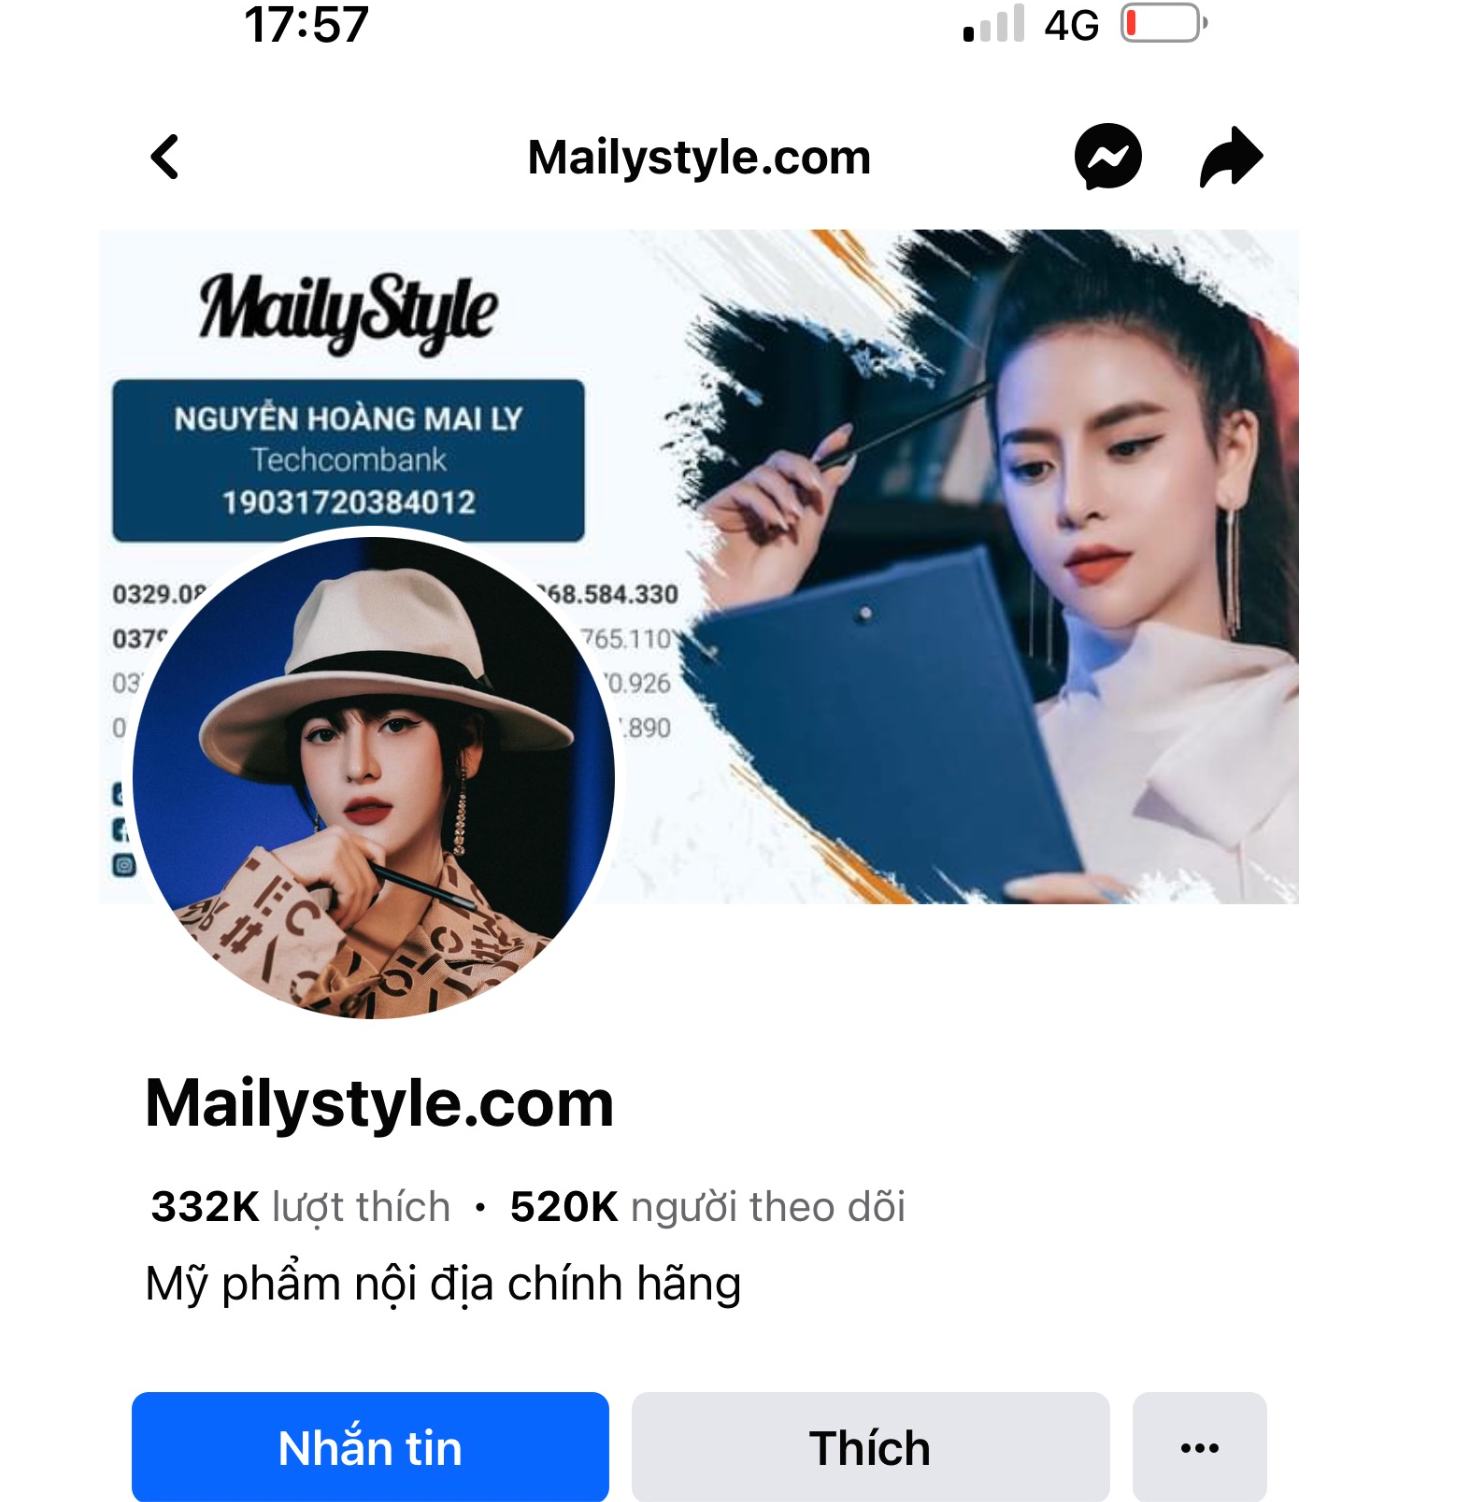 Tài khoản Mailystyle.com có hàng trăm nghìn lượt thích và theo dõi. Ảnh: DMS 